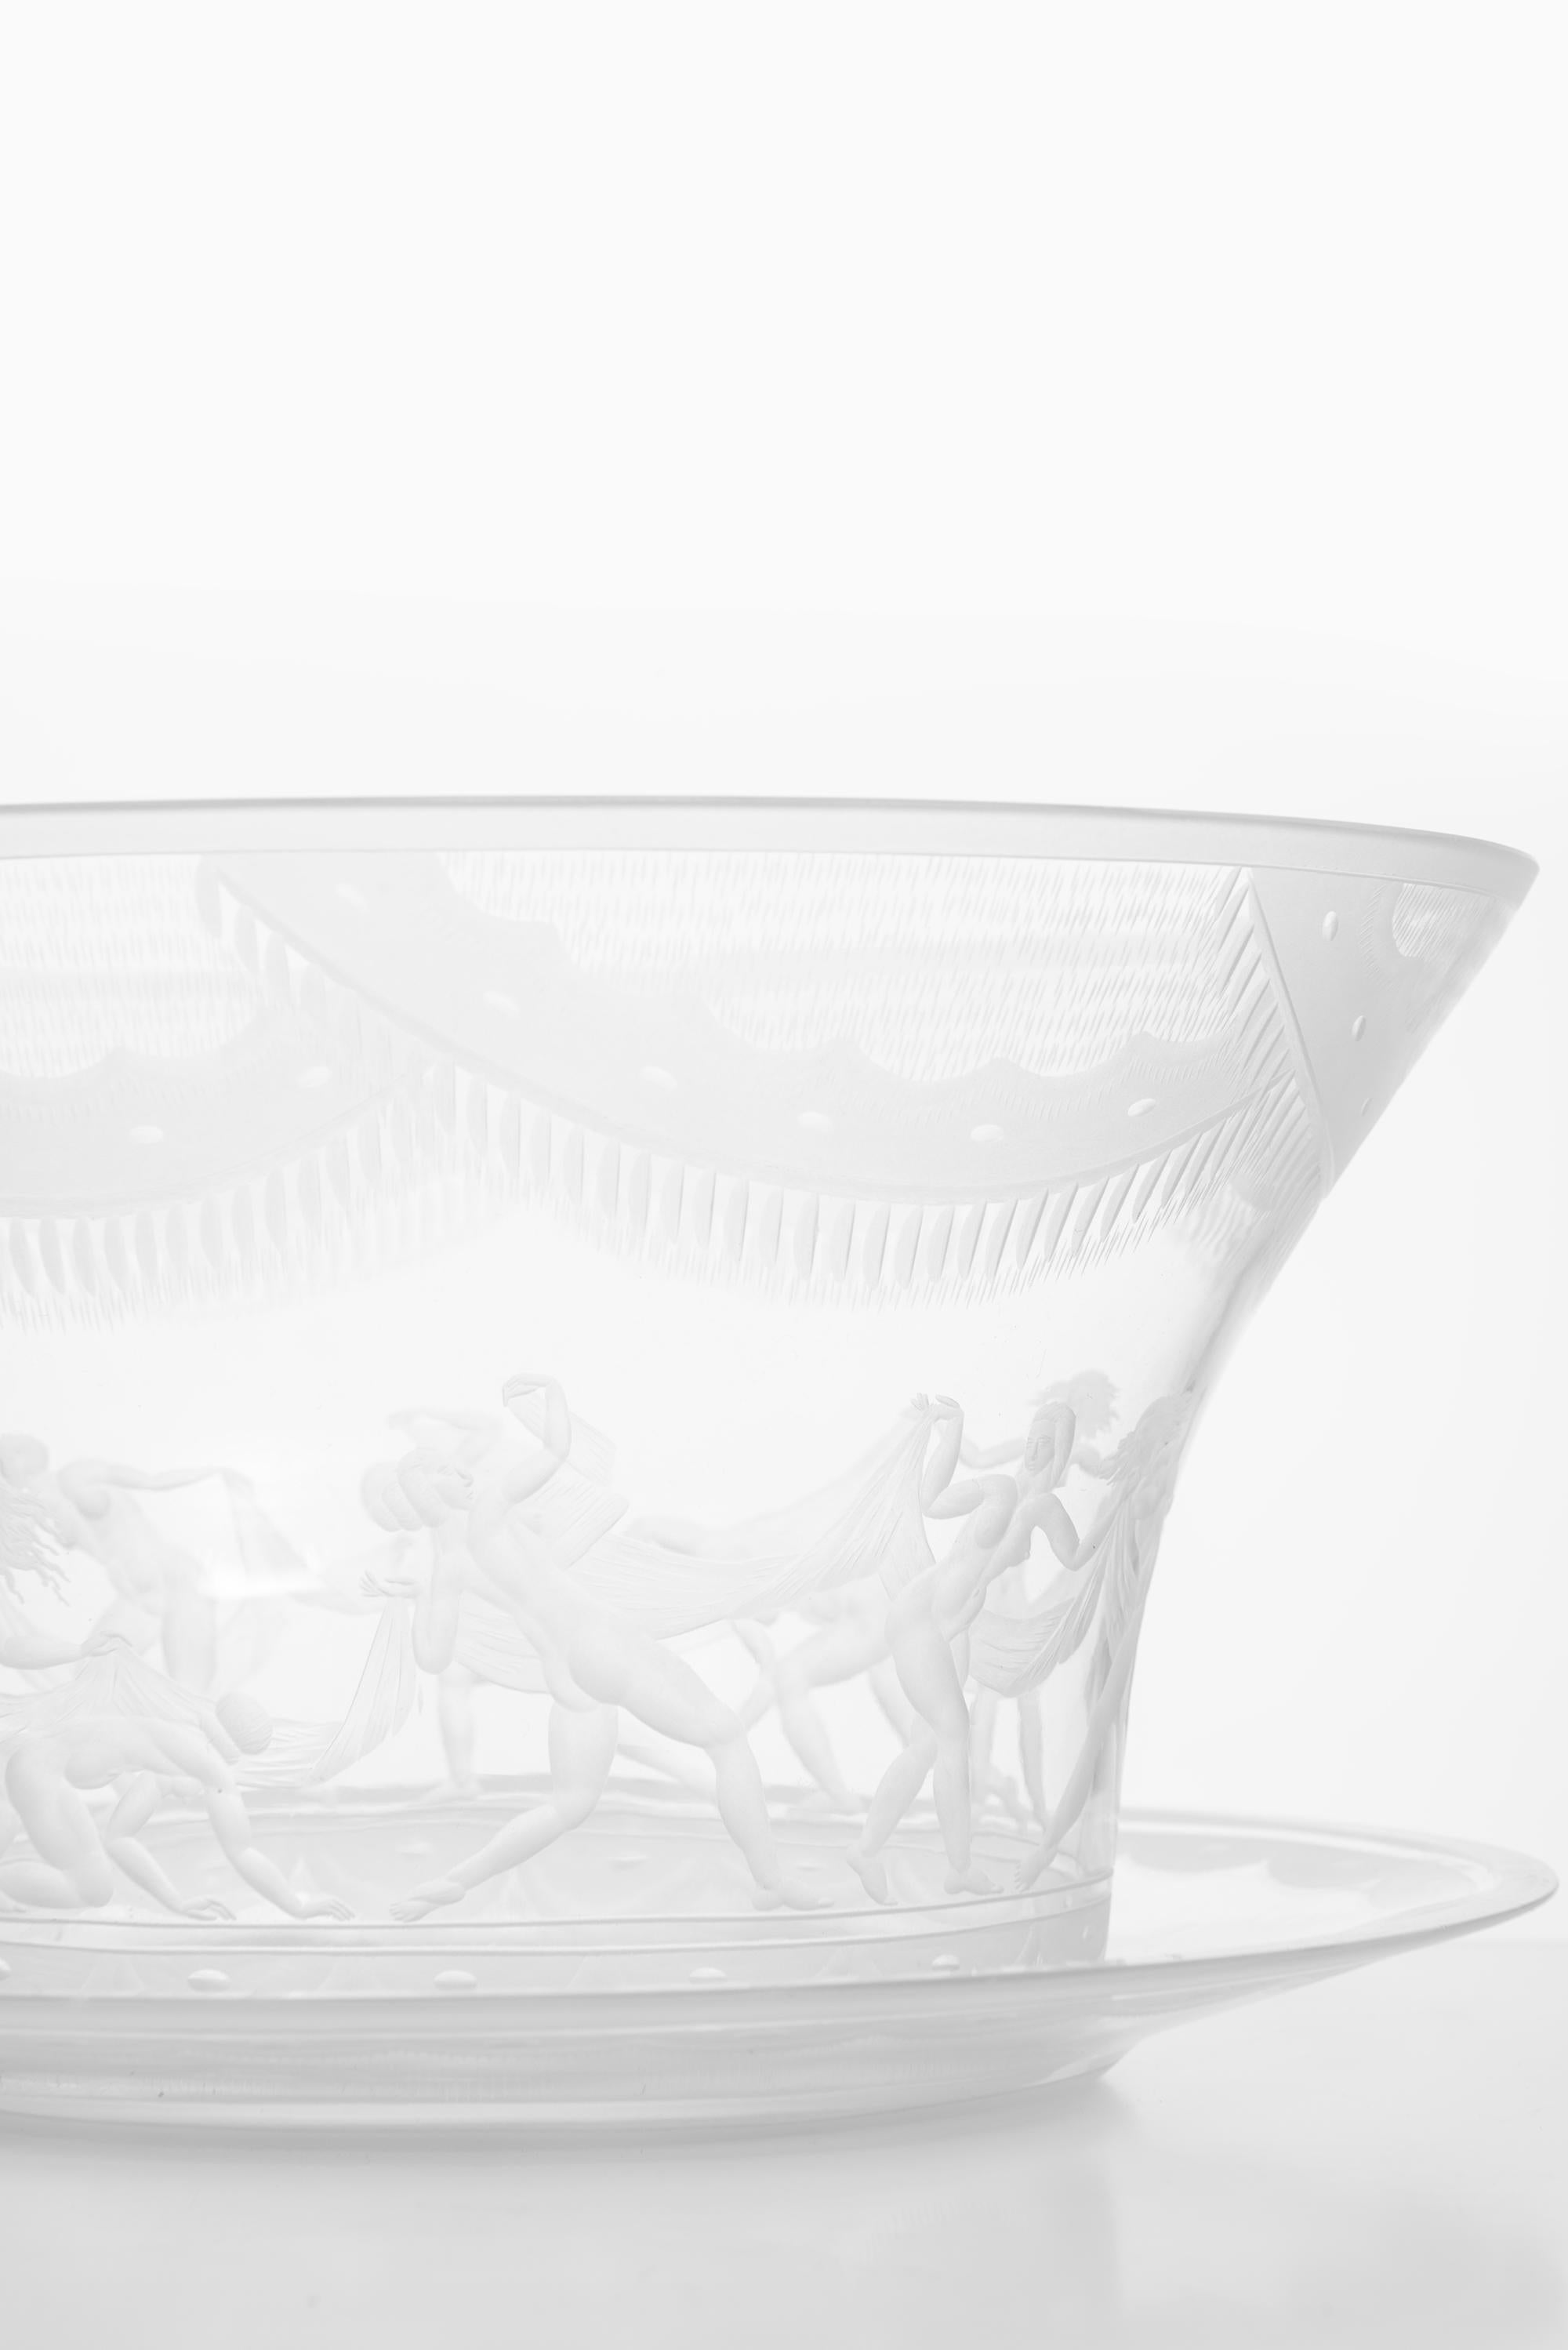 Very rare glass vase model Slöjdansen designed by Simon Gate. Produced by Orrefors in Sweden. Signed Orrefors Gate 109 25 KR (engraver Karl Rössler).